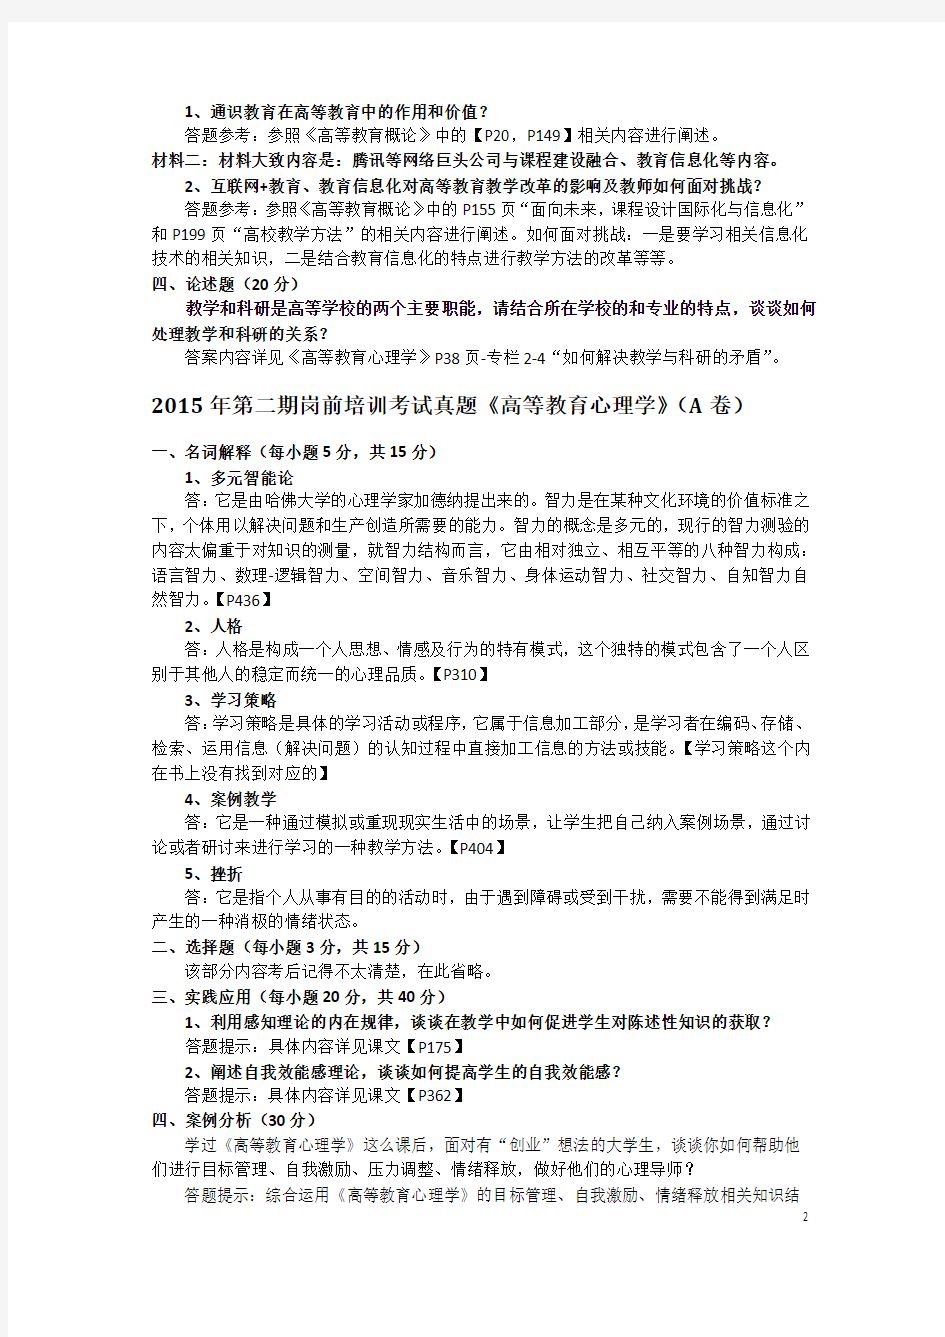 广东省高校教师岗前培训考试真题(2015年第二期)